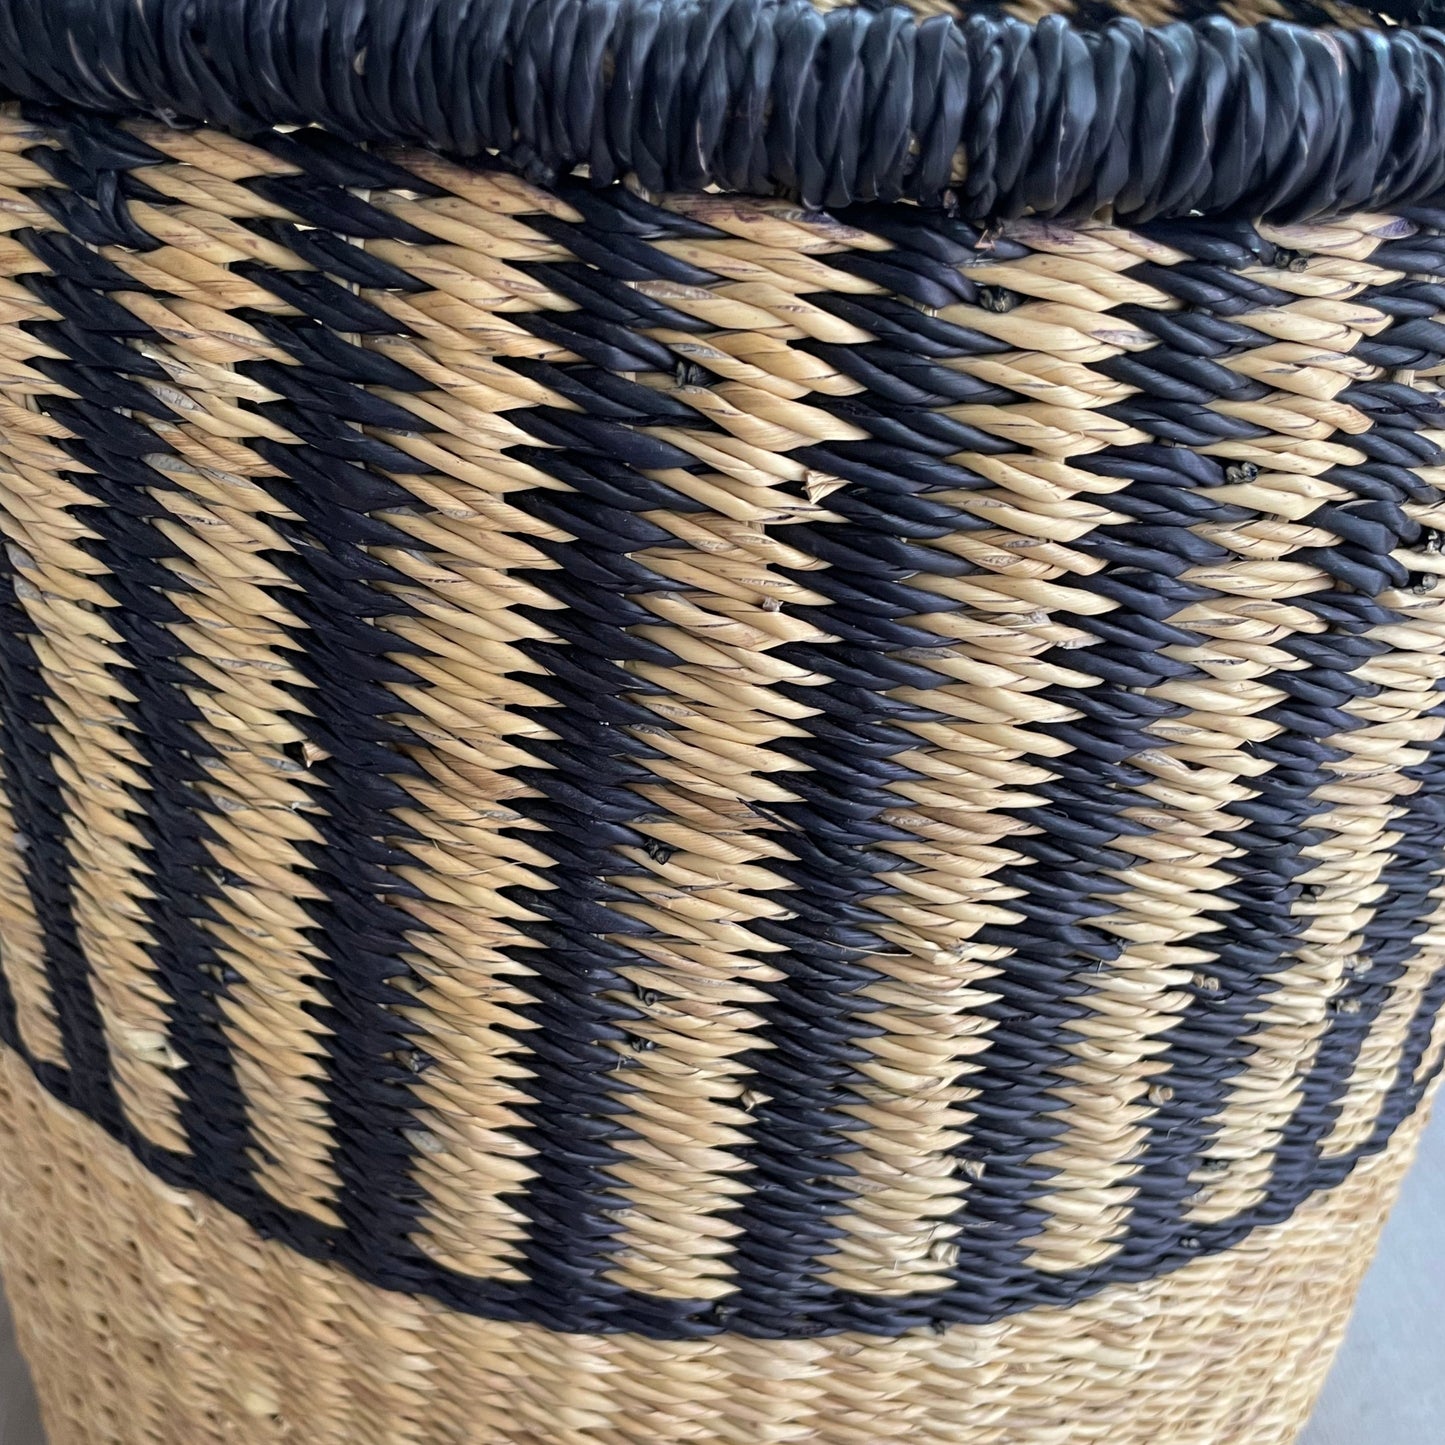 Vasketøjskurv håndflettet med låg. Natur farve og sort. Tre størrelser. Fair Trade fra Ghana